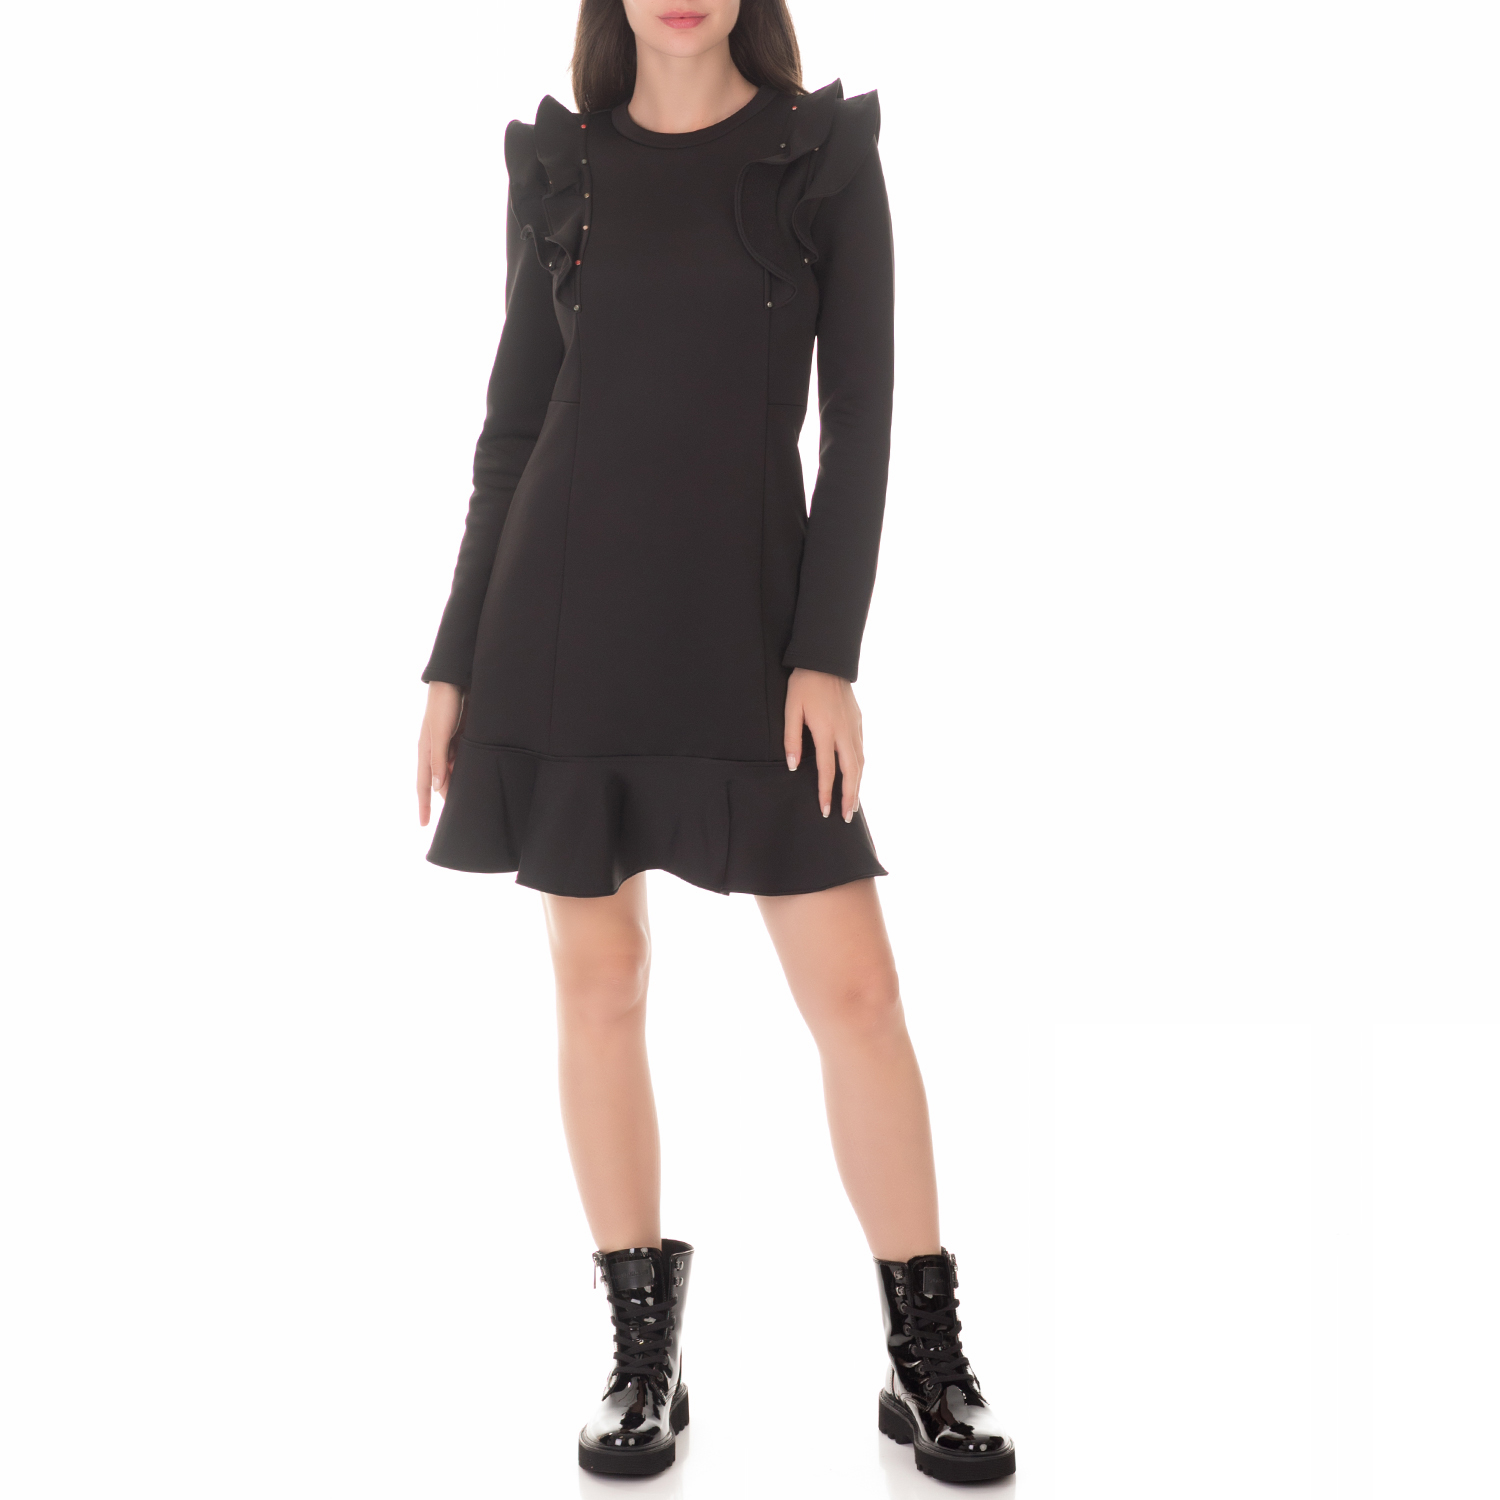 Γυναικεία/Ρούχα/Φορέματα/Μίνι SCOTCH & SODA - Γυναικείο μίνι φόρεμα SCOTCH & SODA Technical sweat dress μαύρο